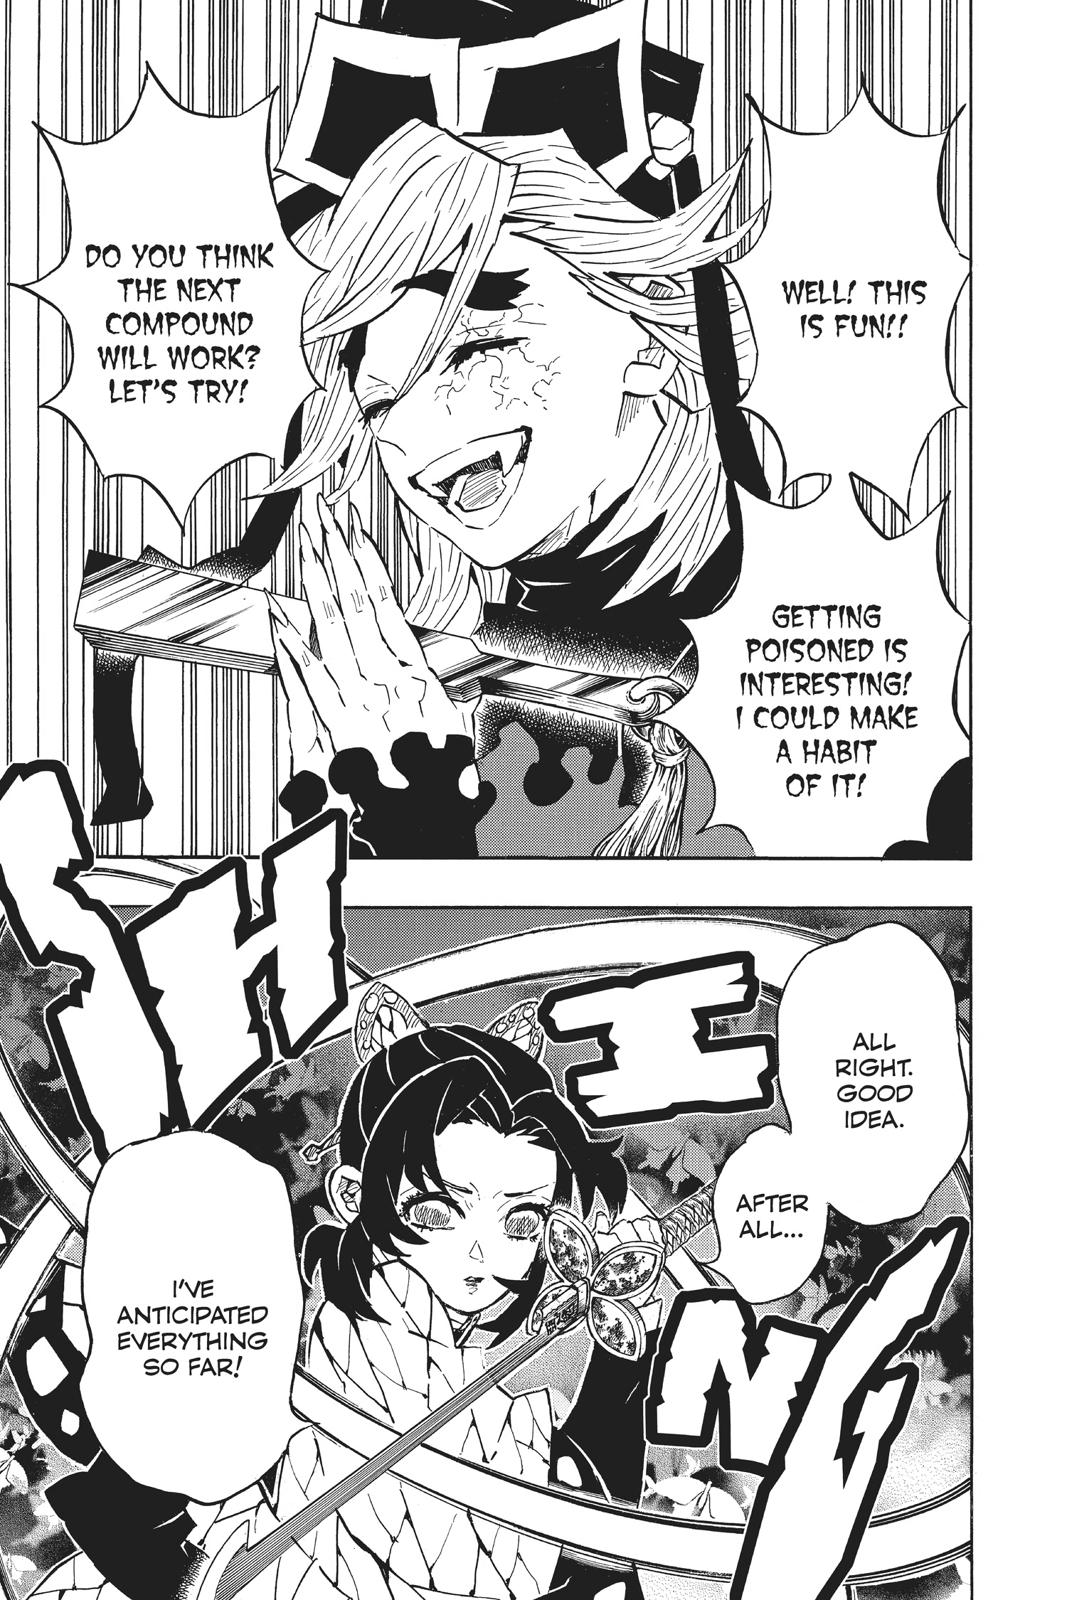 Demon Slayer Manga Manga Chapter - 141 - image 13